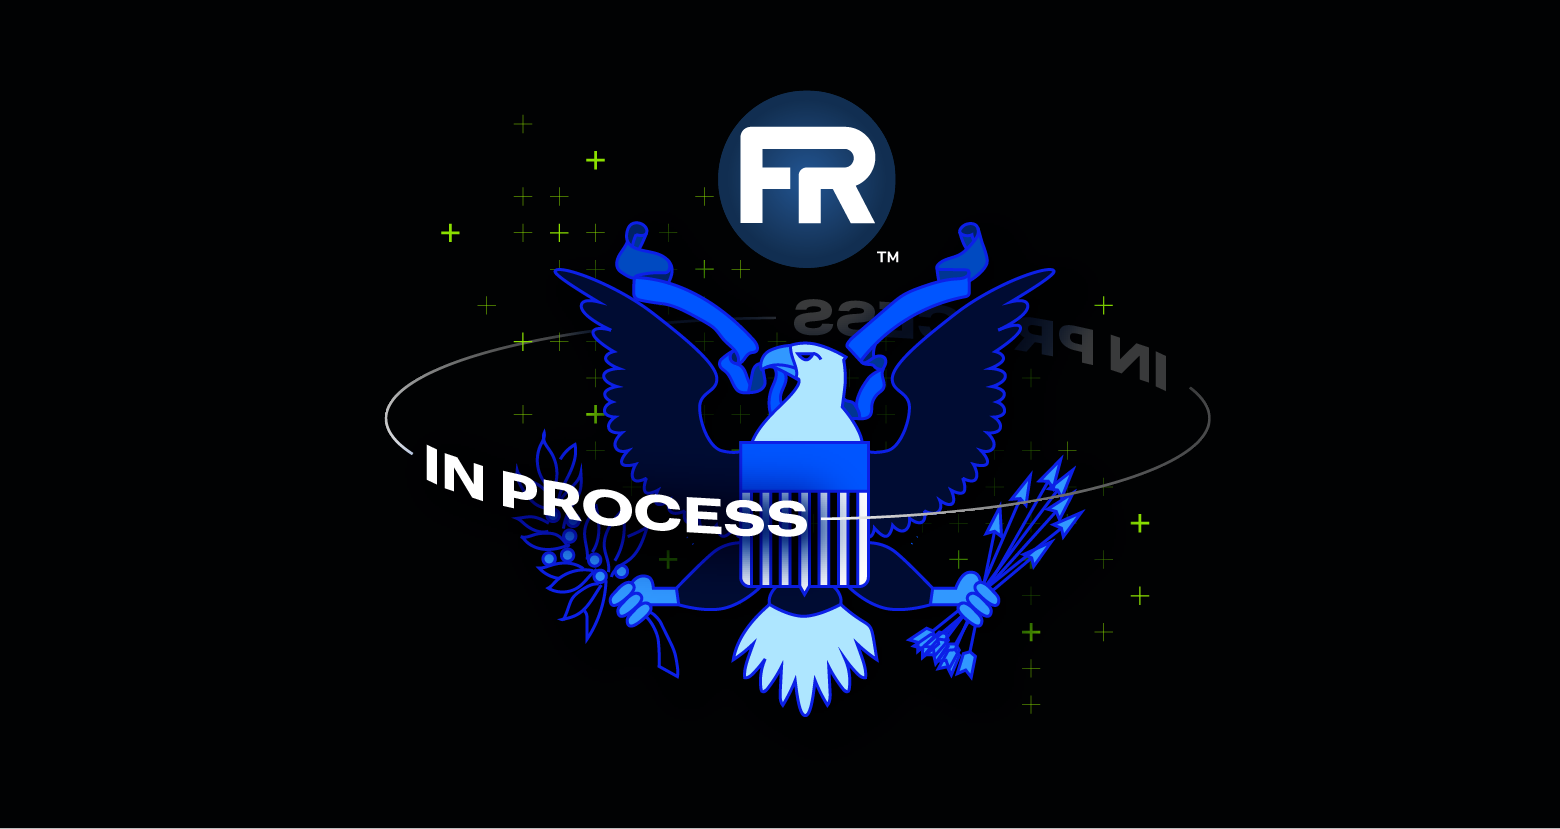 FedRAMP In Process